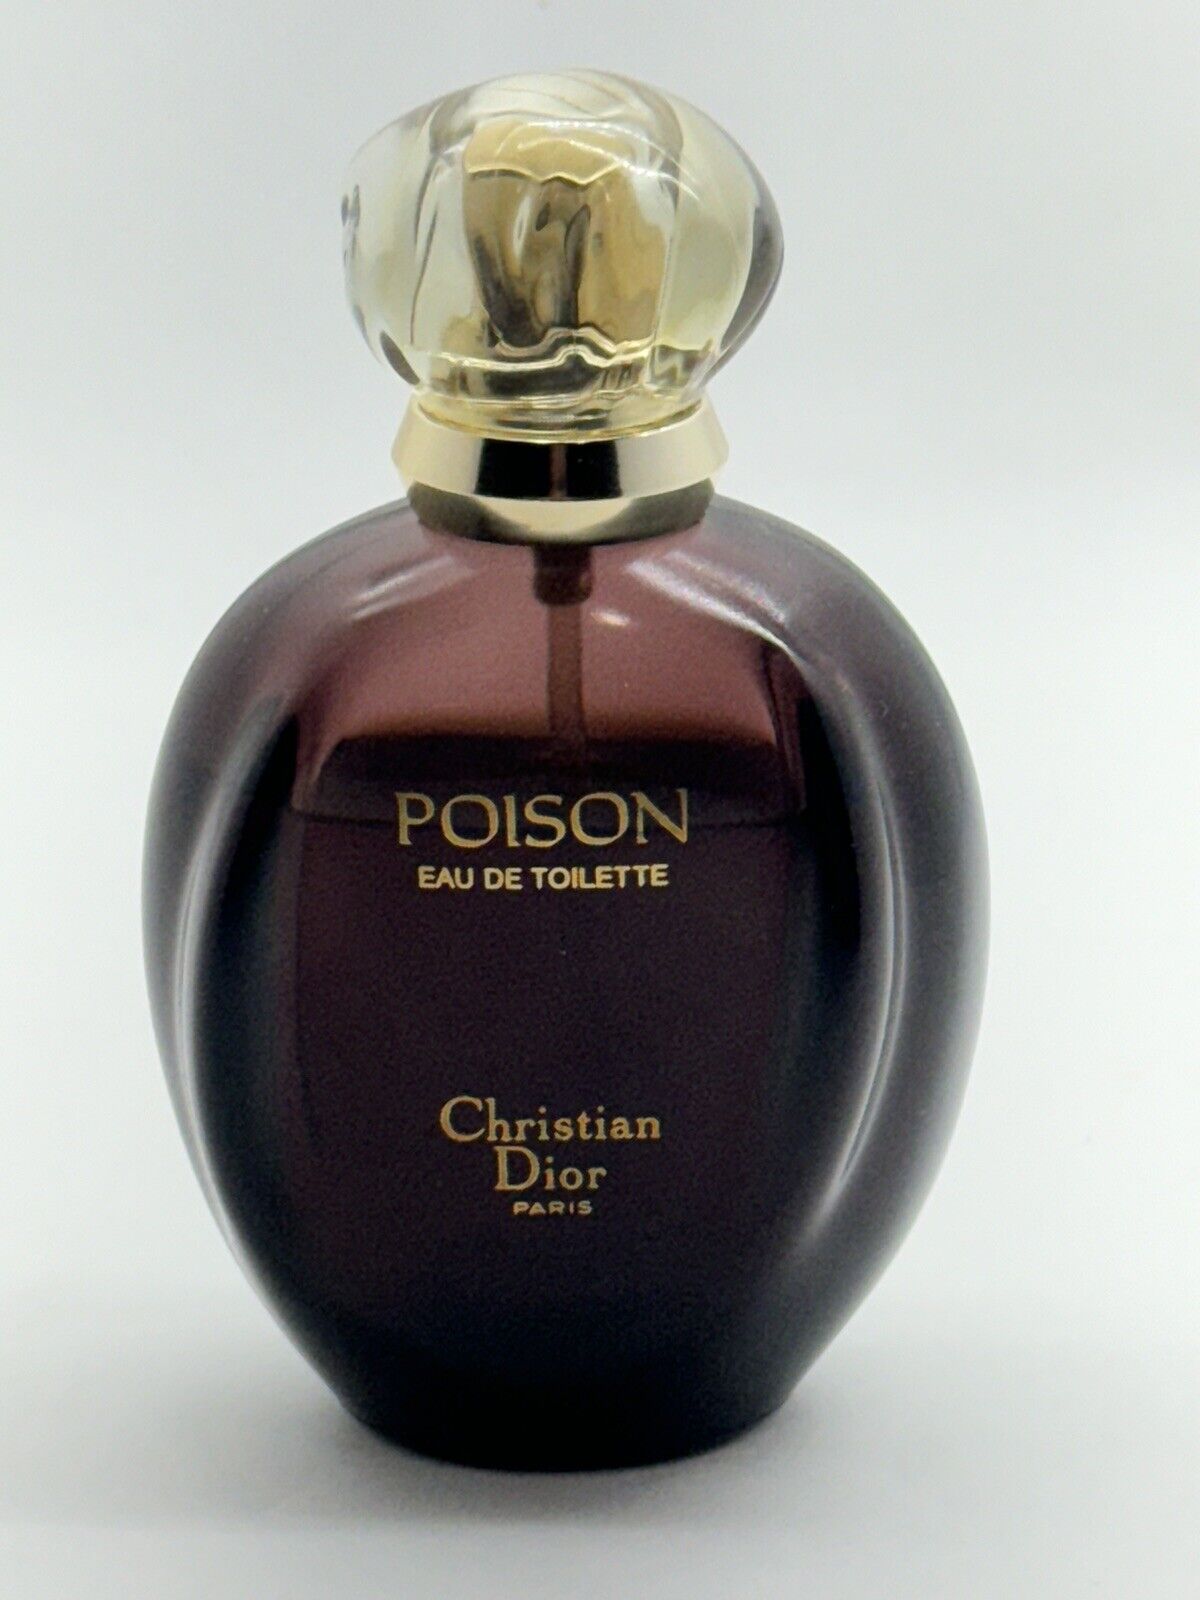 Vintage Christian Dior Poison Eau de Toilette 1.7 Fl oz/50 ML 80% full